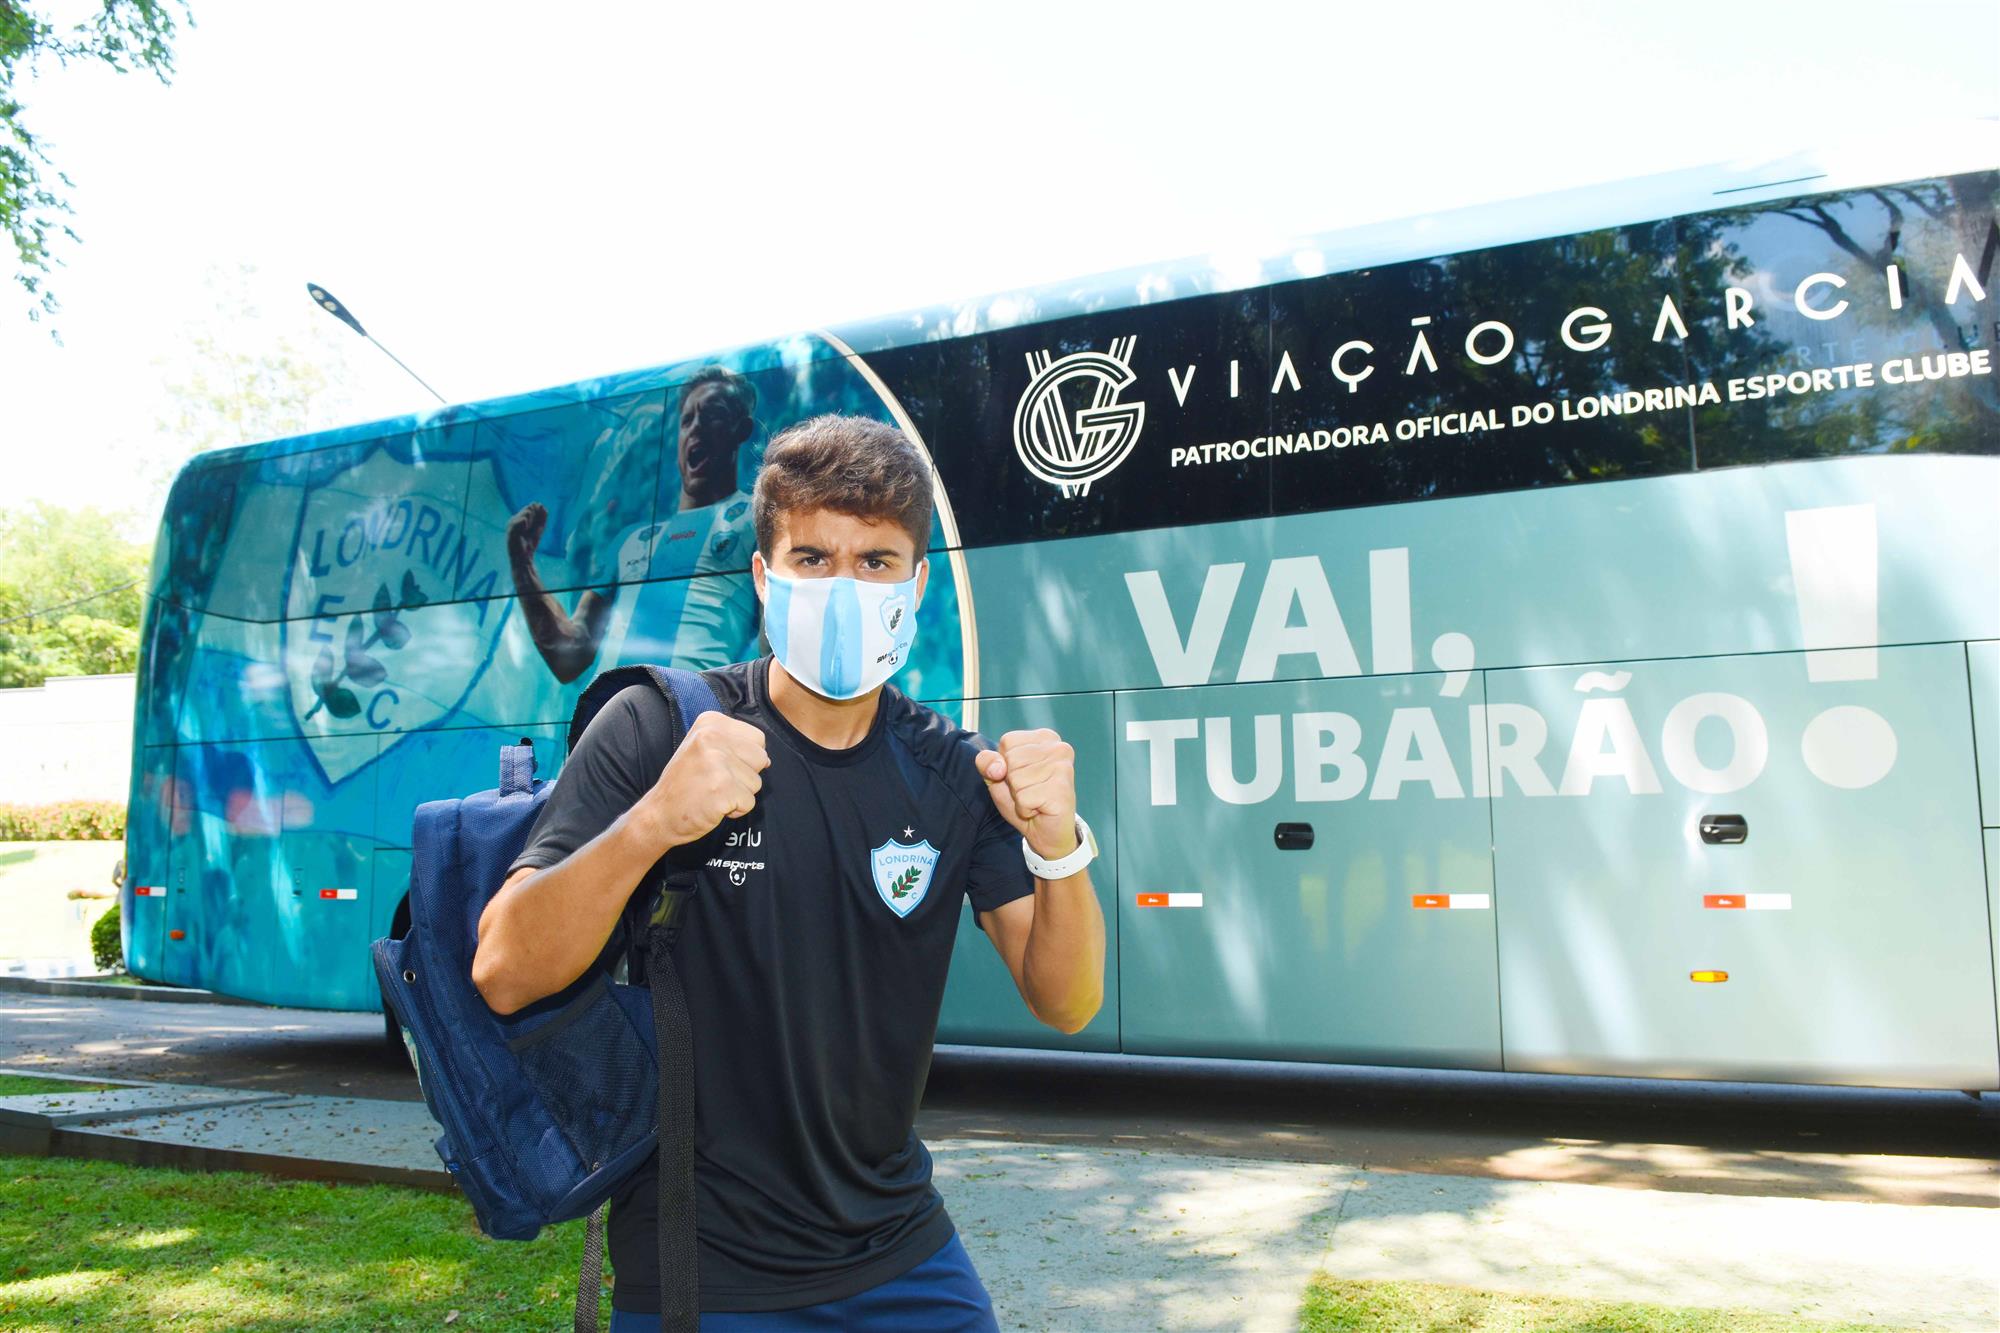 Ônibus da Viação Garcia que leva time do Londrina está de cara nova